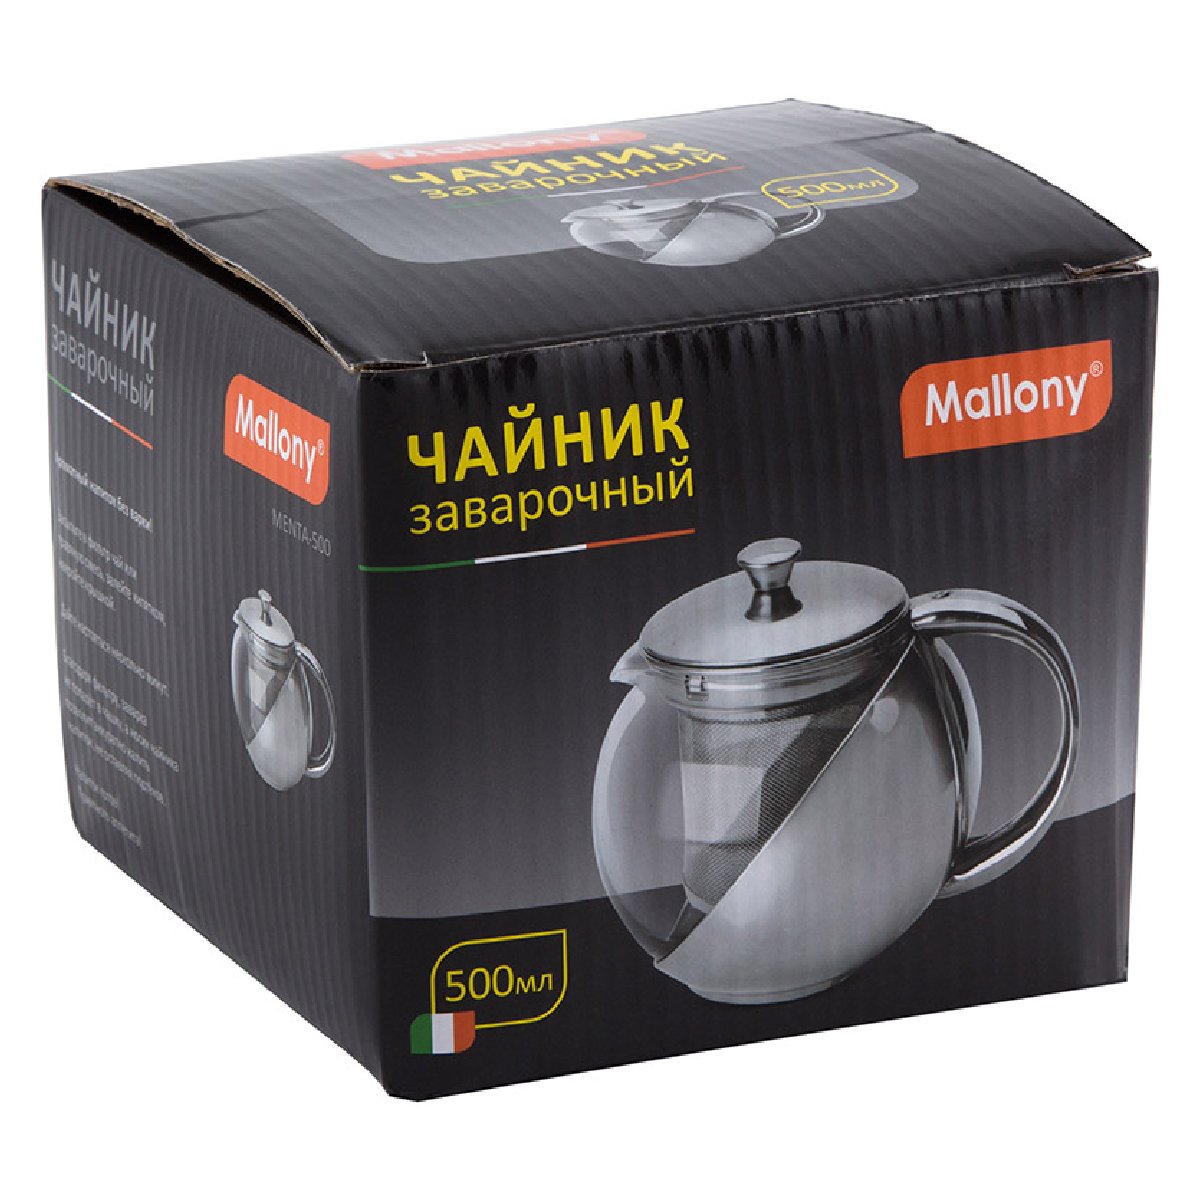 Чайник заварочный MENTA-500, объем 500 мл, корпус фильтр из нерж стали (910109)